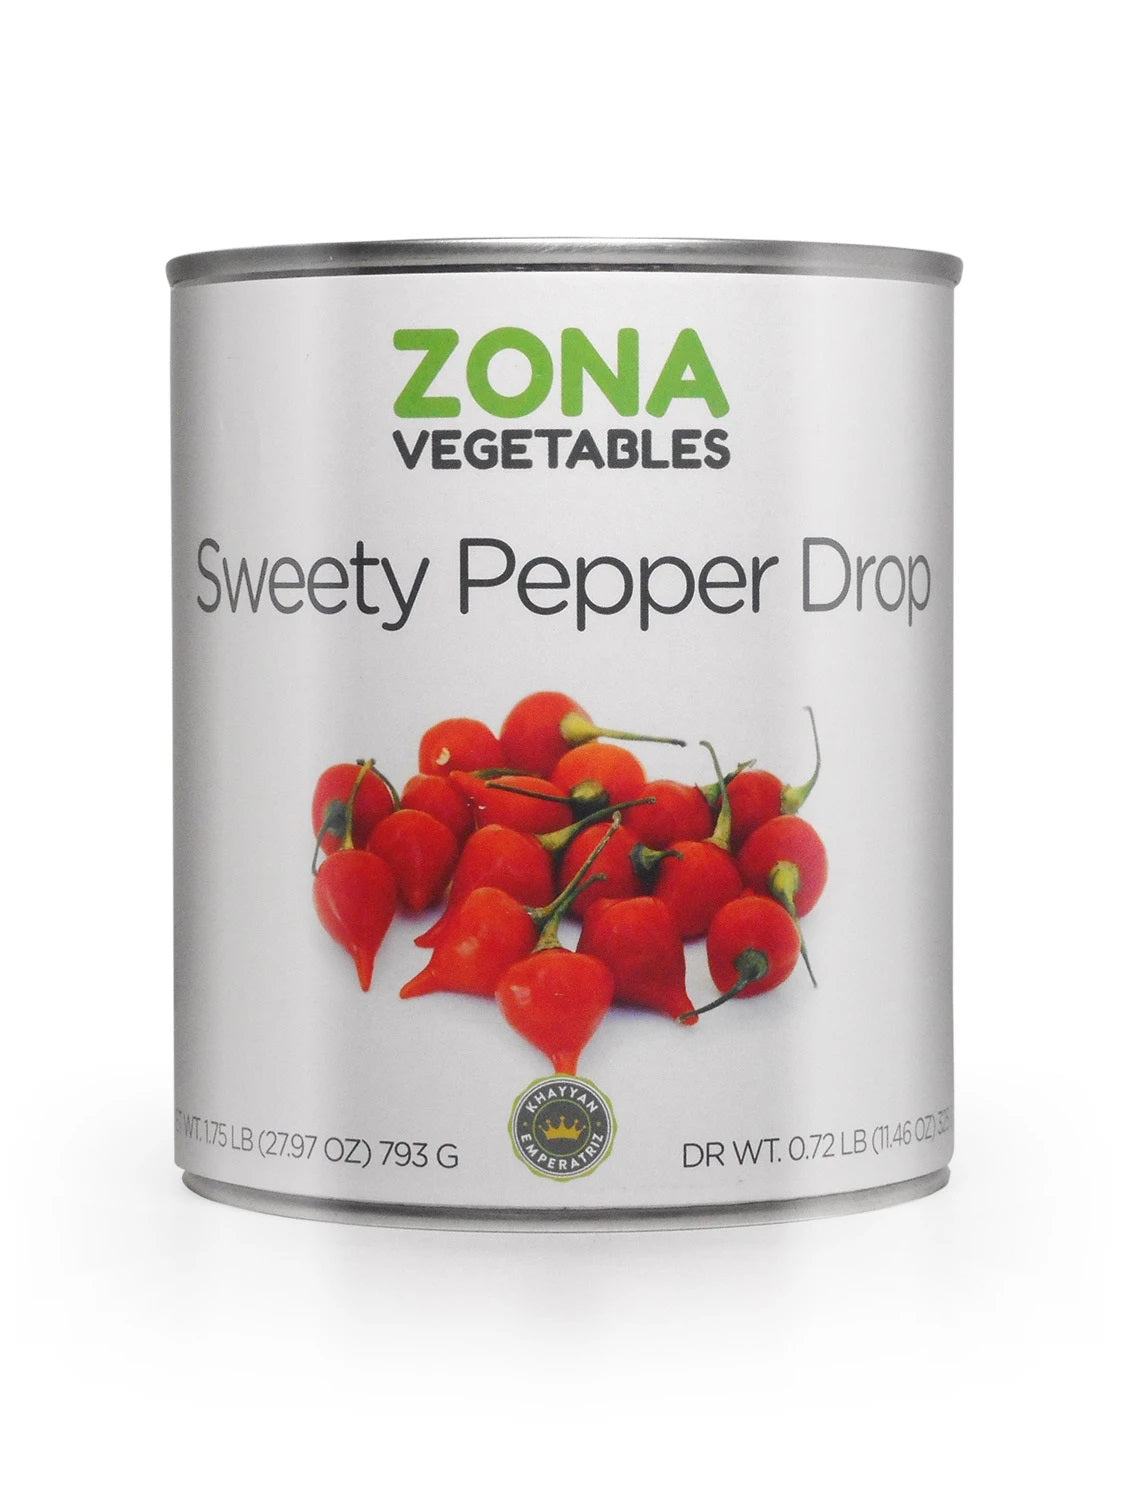 Zona Sweety Pepper Drop - 793gr/12pk